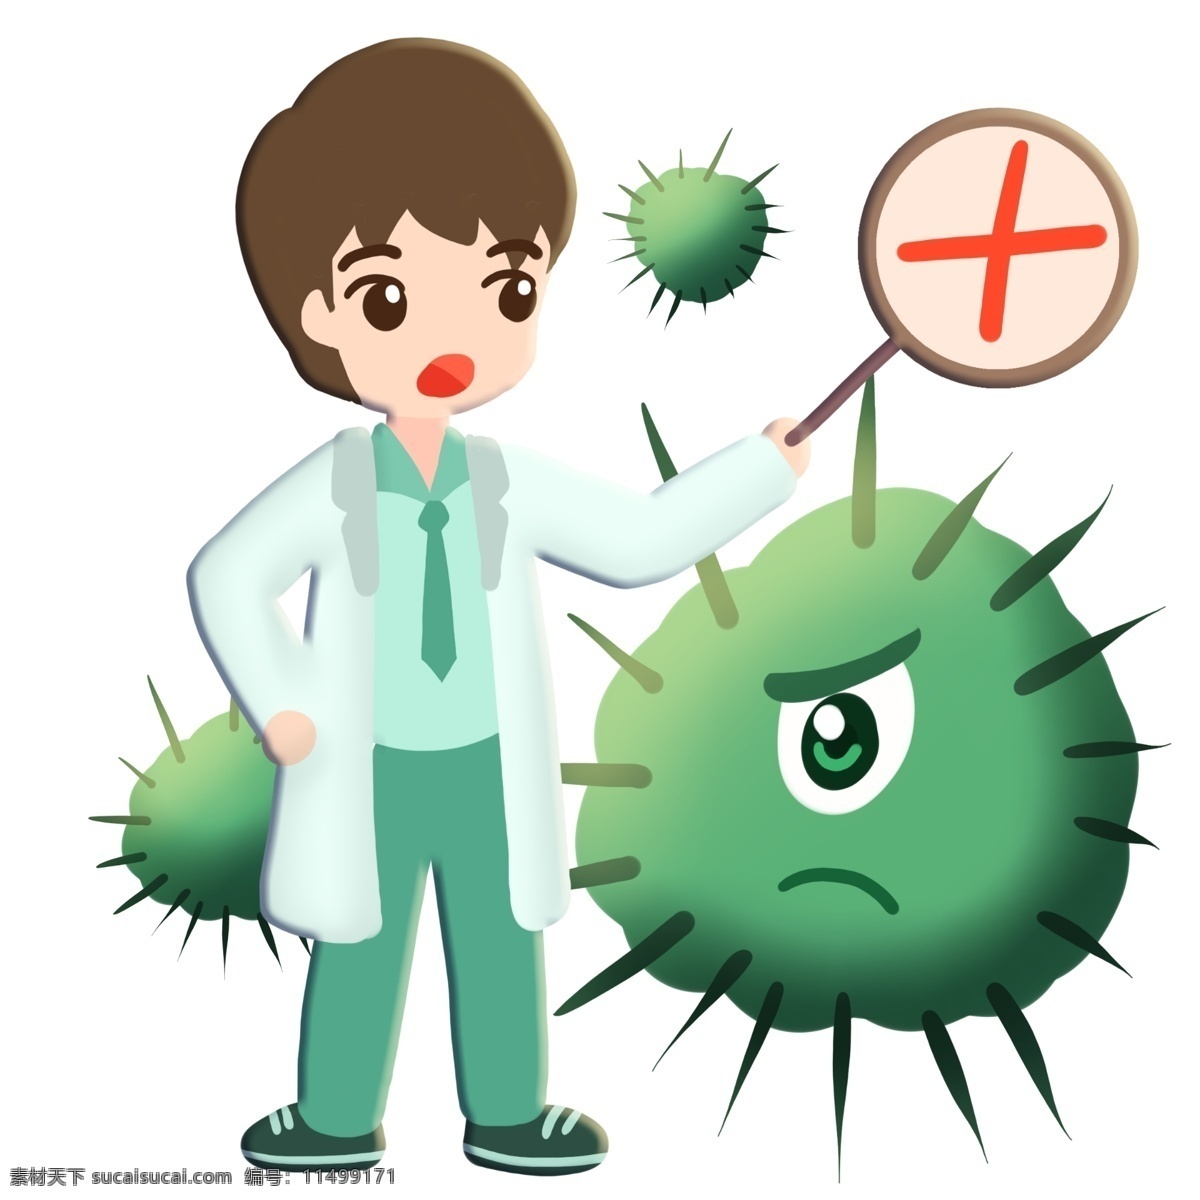 医生 毒刺 病毒 细菌 卡通 禁止 治疗 制服 医学 生物 害怕 冷笑 疾病 生病 菌体 菌状 细胞